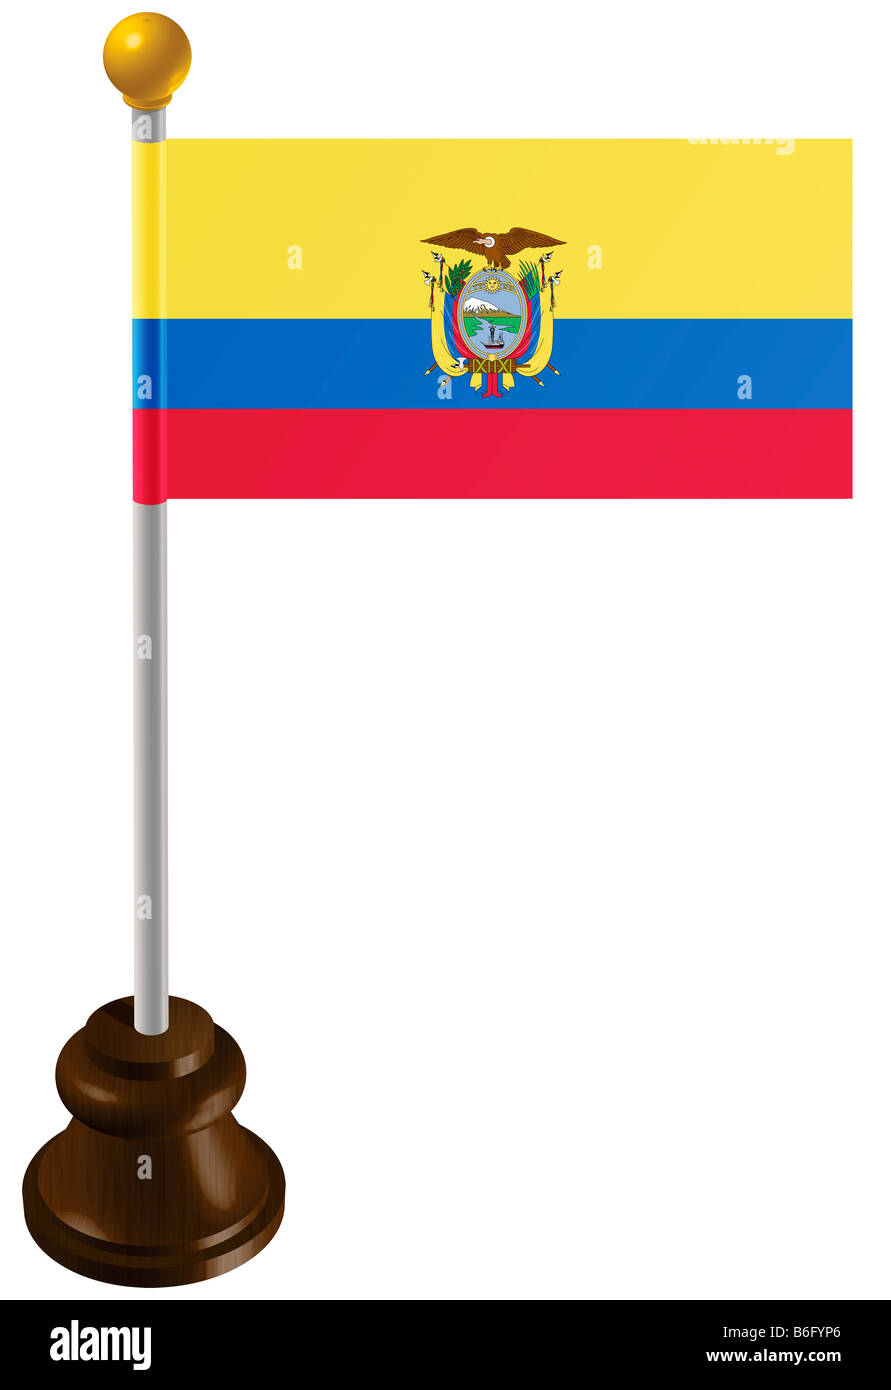 Ecuador flag as a marker Stock Photo